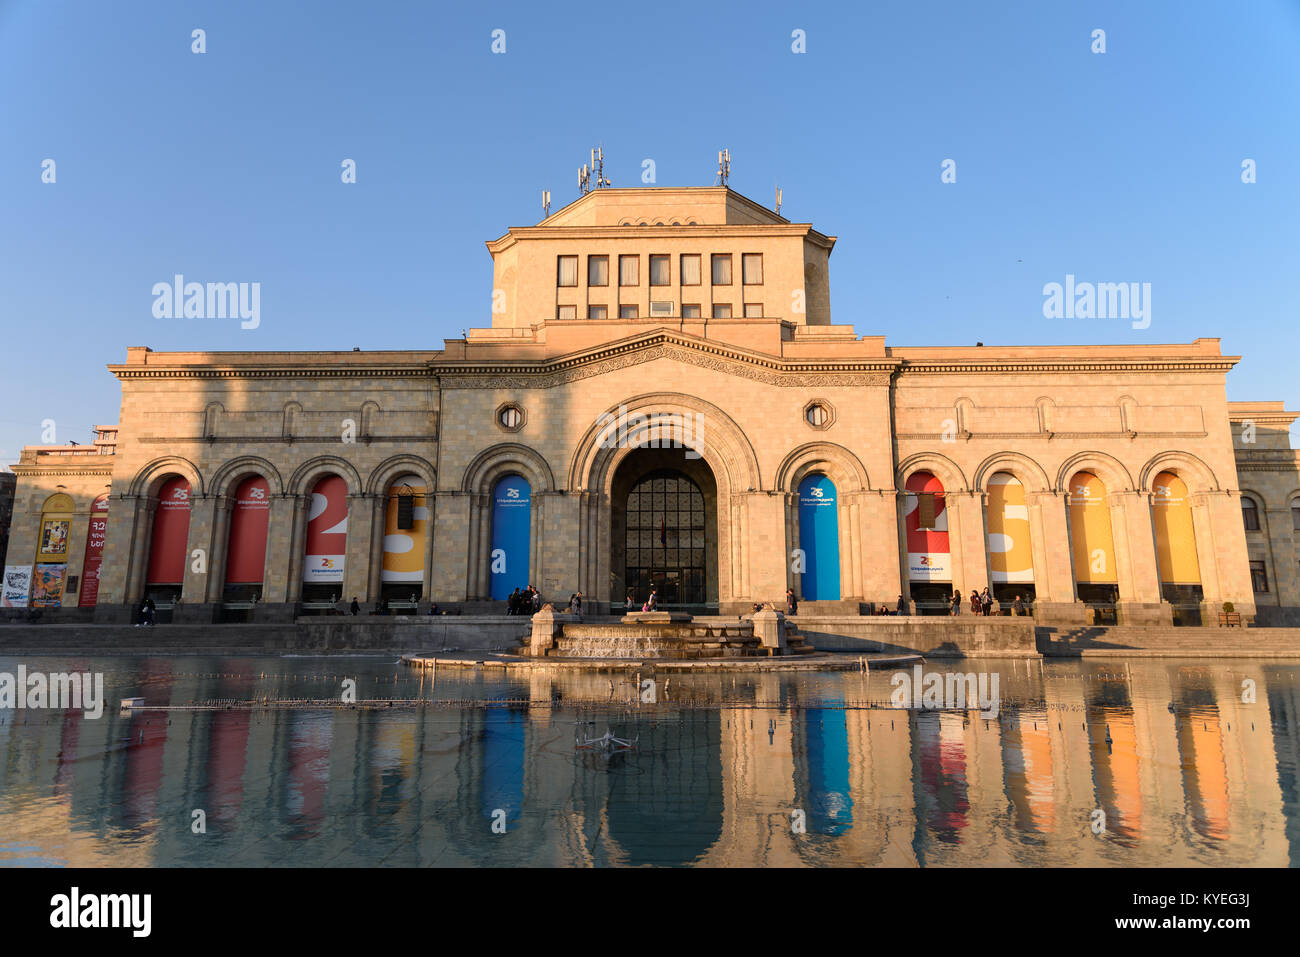 Yerevan, Armenien - 3. April 2017: Museum der Geschichte von Armenien am Platz der Republik im Zentrum von Eriwan, Armenien im April Abendlicht. Stockfoto